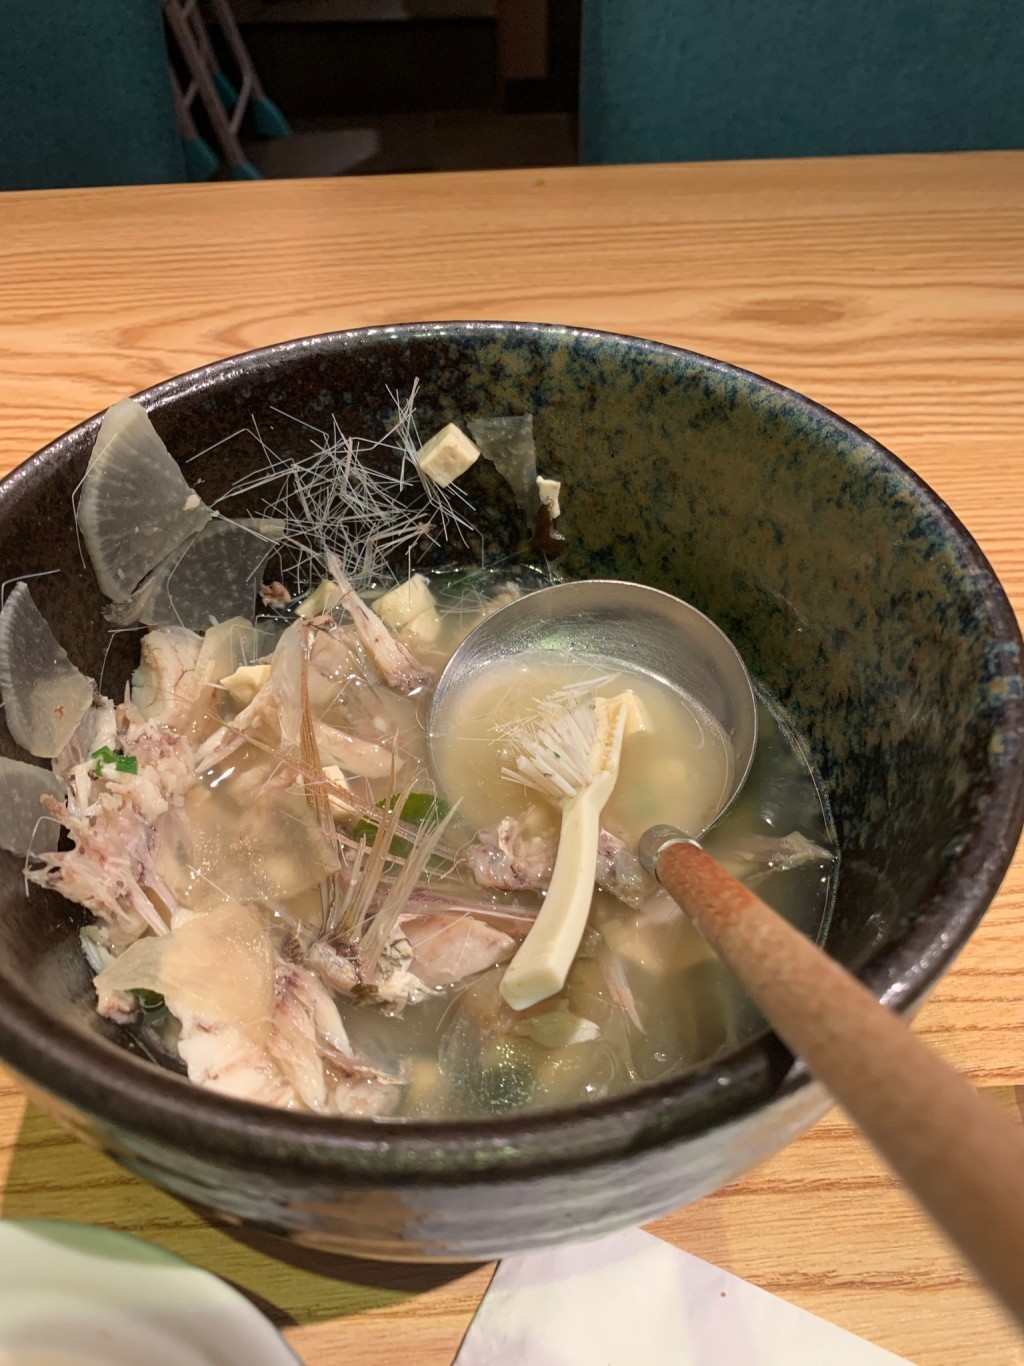 澳門網民光顧日式餐廳飲用魚湯時竟然發現有牙刷。facebook澳門難食中伏團網民圖片